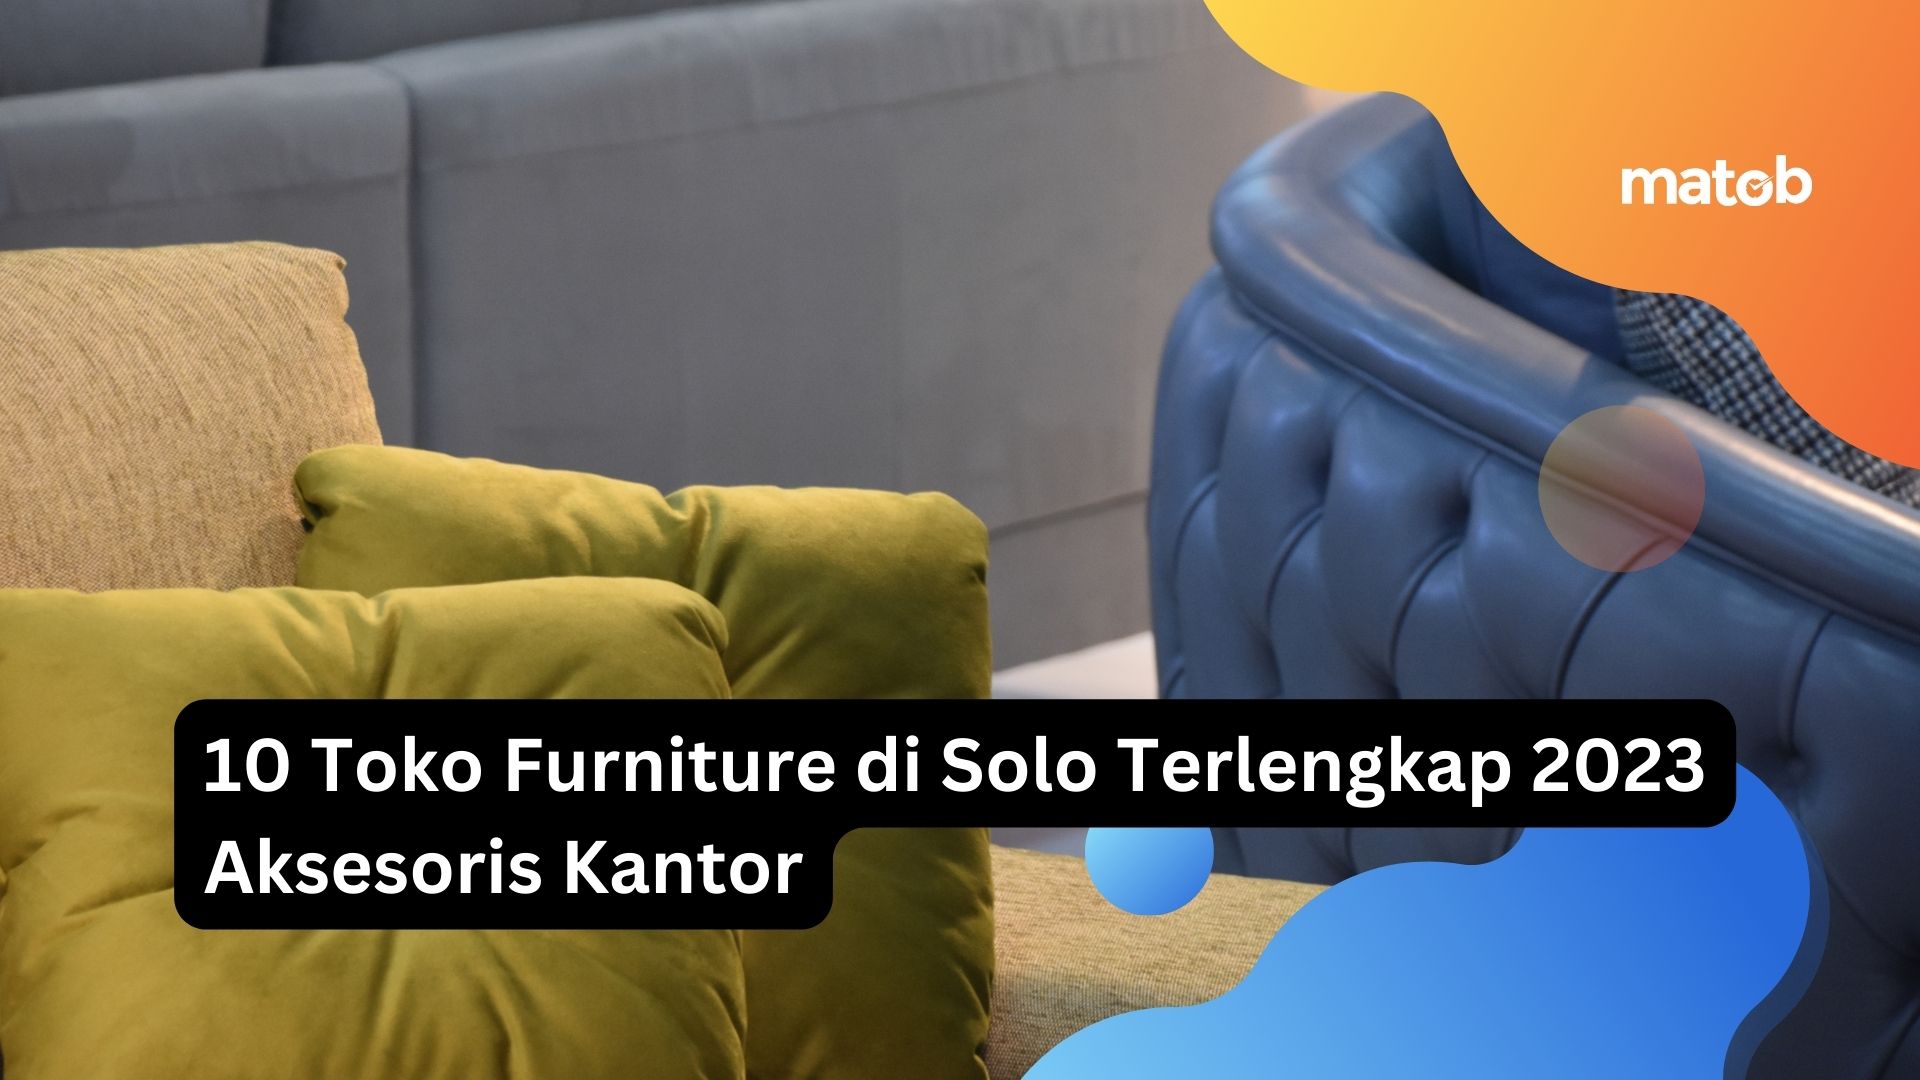 10 Toko Furniture di Solo Terlengkap 2023 Aksesoris Kantor